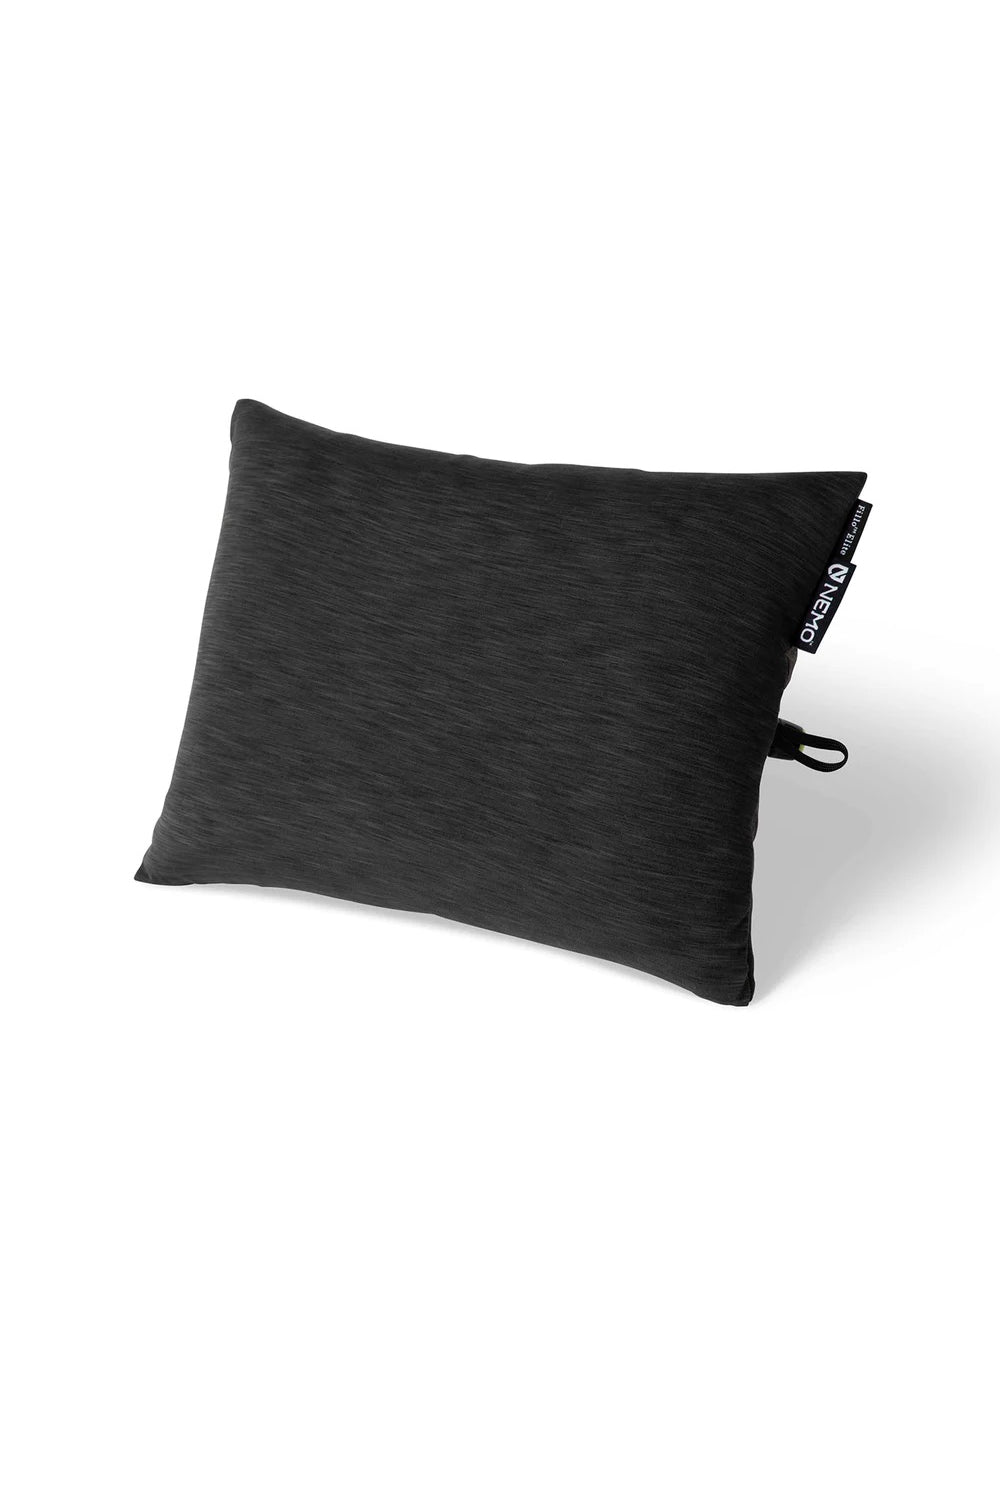 Nemo Fillo Elite Pillow - Midnight Grey | Coffee Outdoors